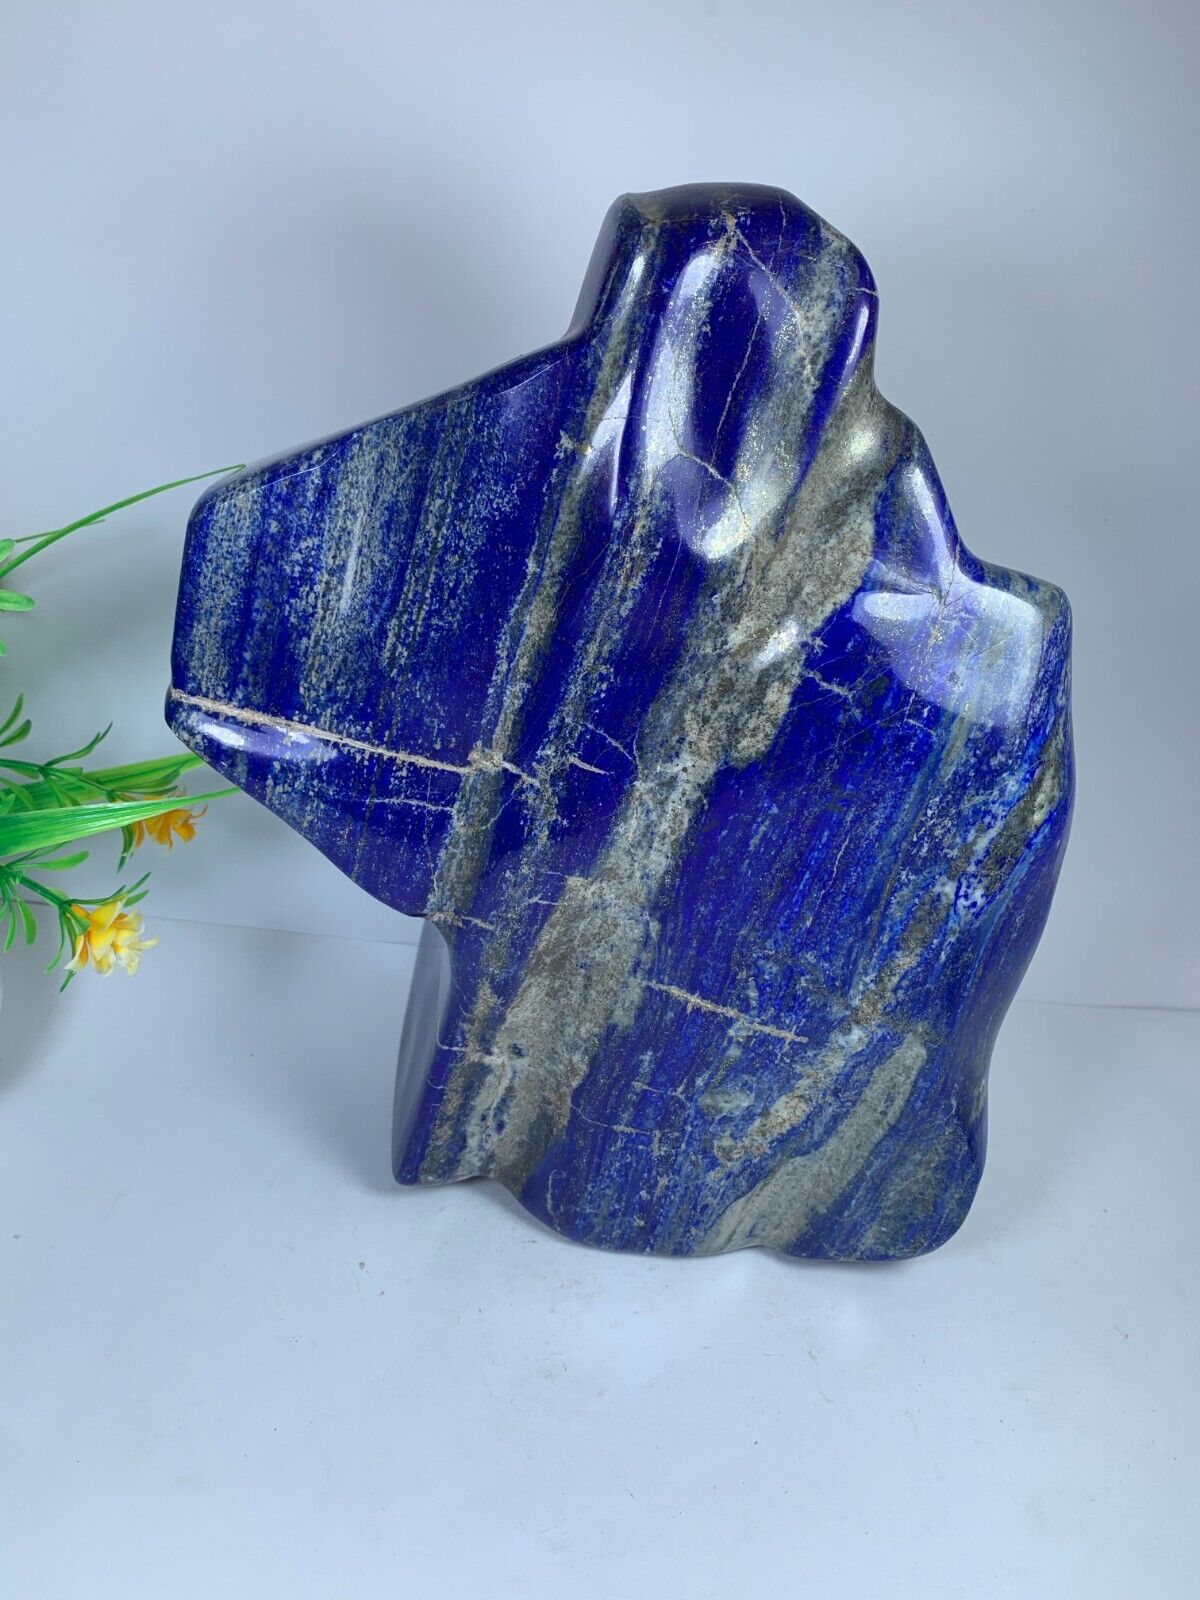 5.4kg Lapis Lazuli Healing Crystal Freeform Polished Rough Tumble Specimen Stone